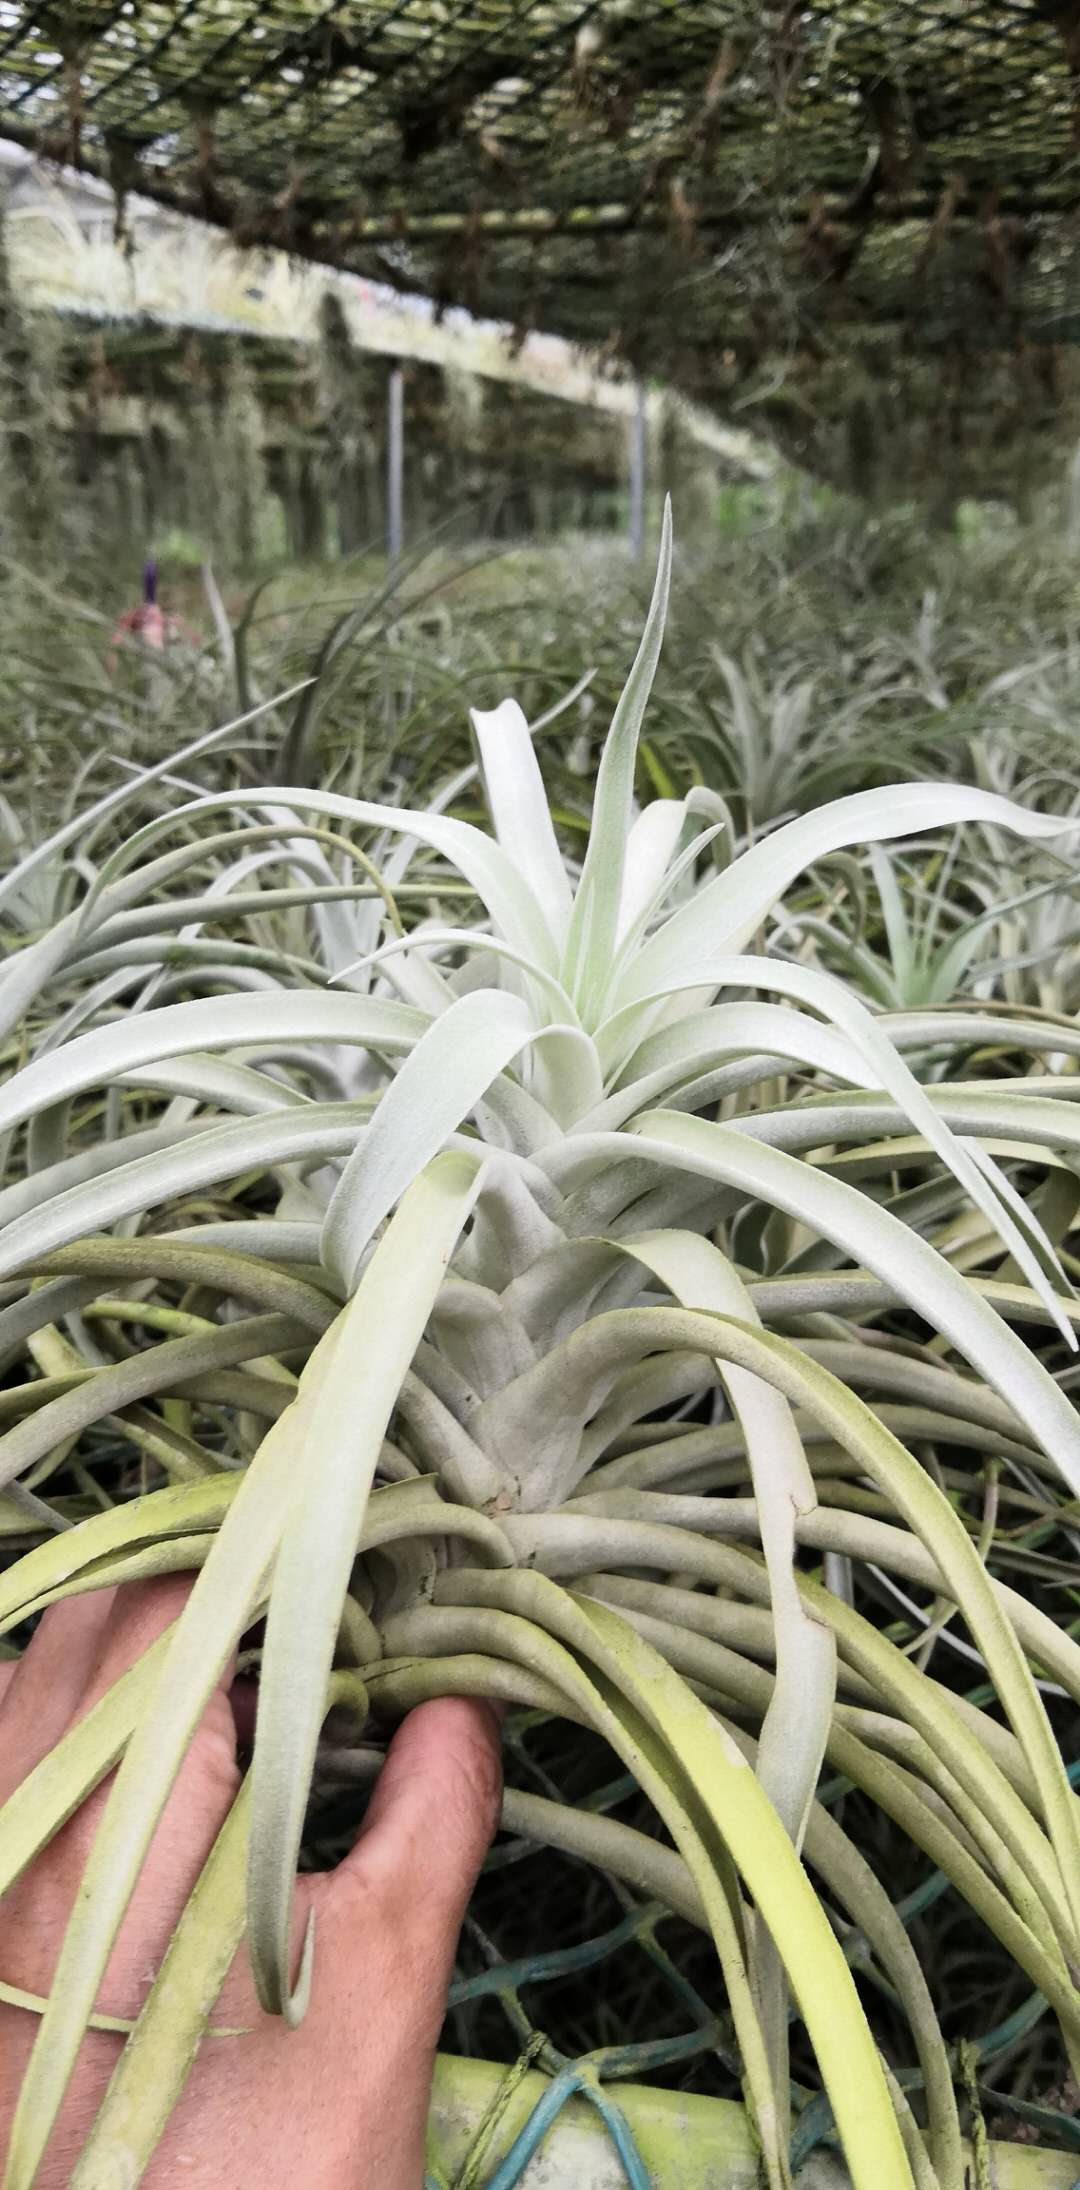 空气凤梨 哈里斯无土绿色植物 大型空凤厚叶 水培养植物 稀少品种图片